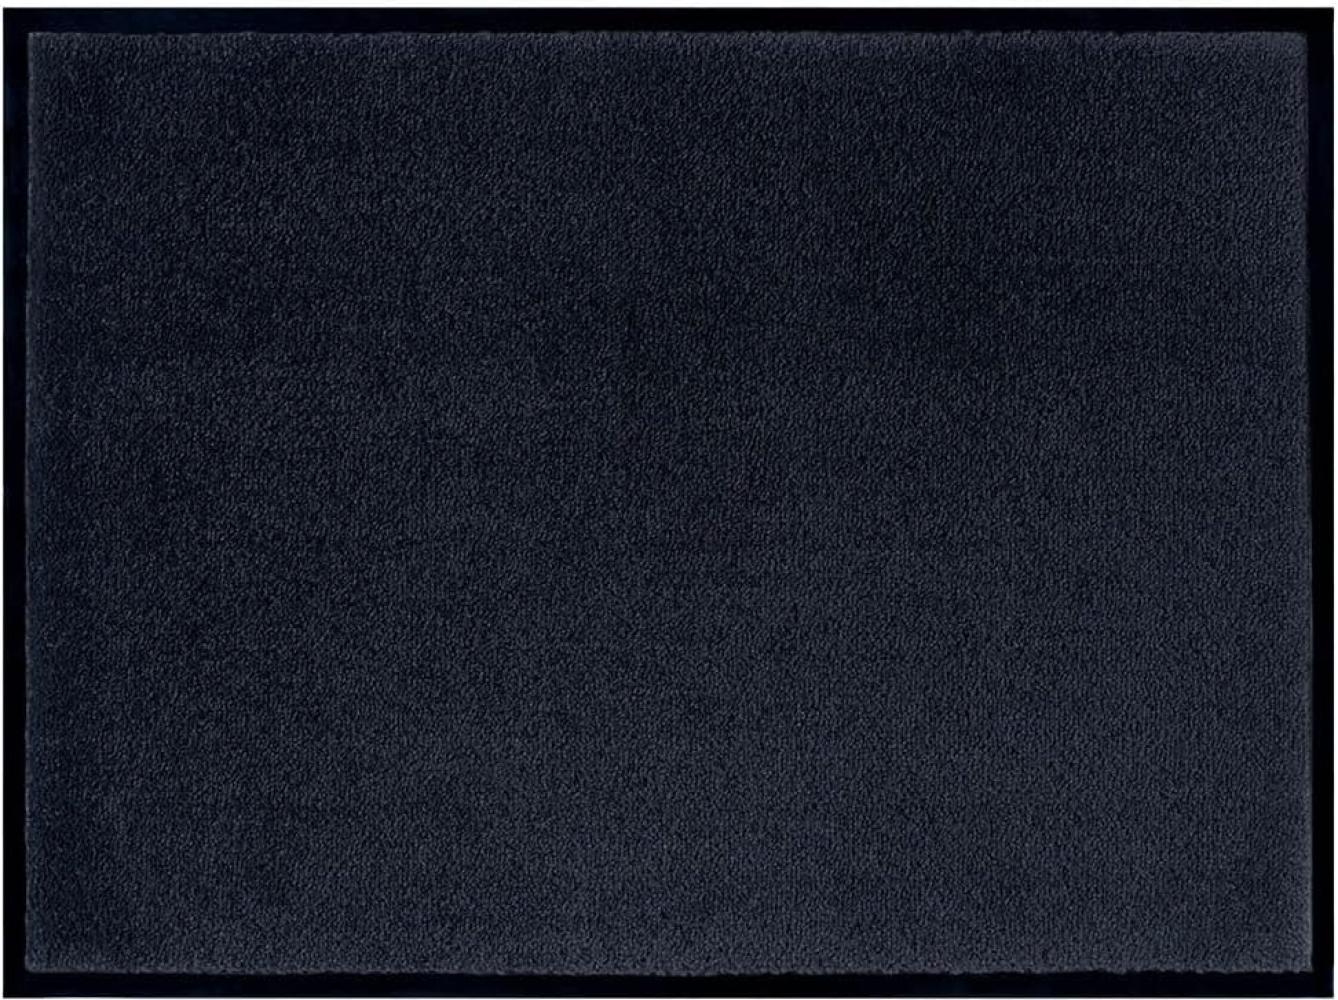 Teppich Boss waschbare In- & Outdoor Fußmatte Uni einfarbig - schwarz - 90x150x0,7cm Bild 1